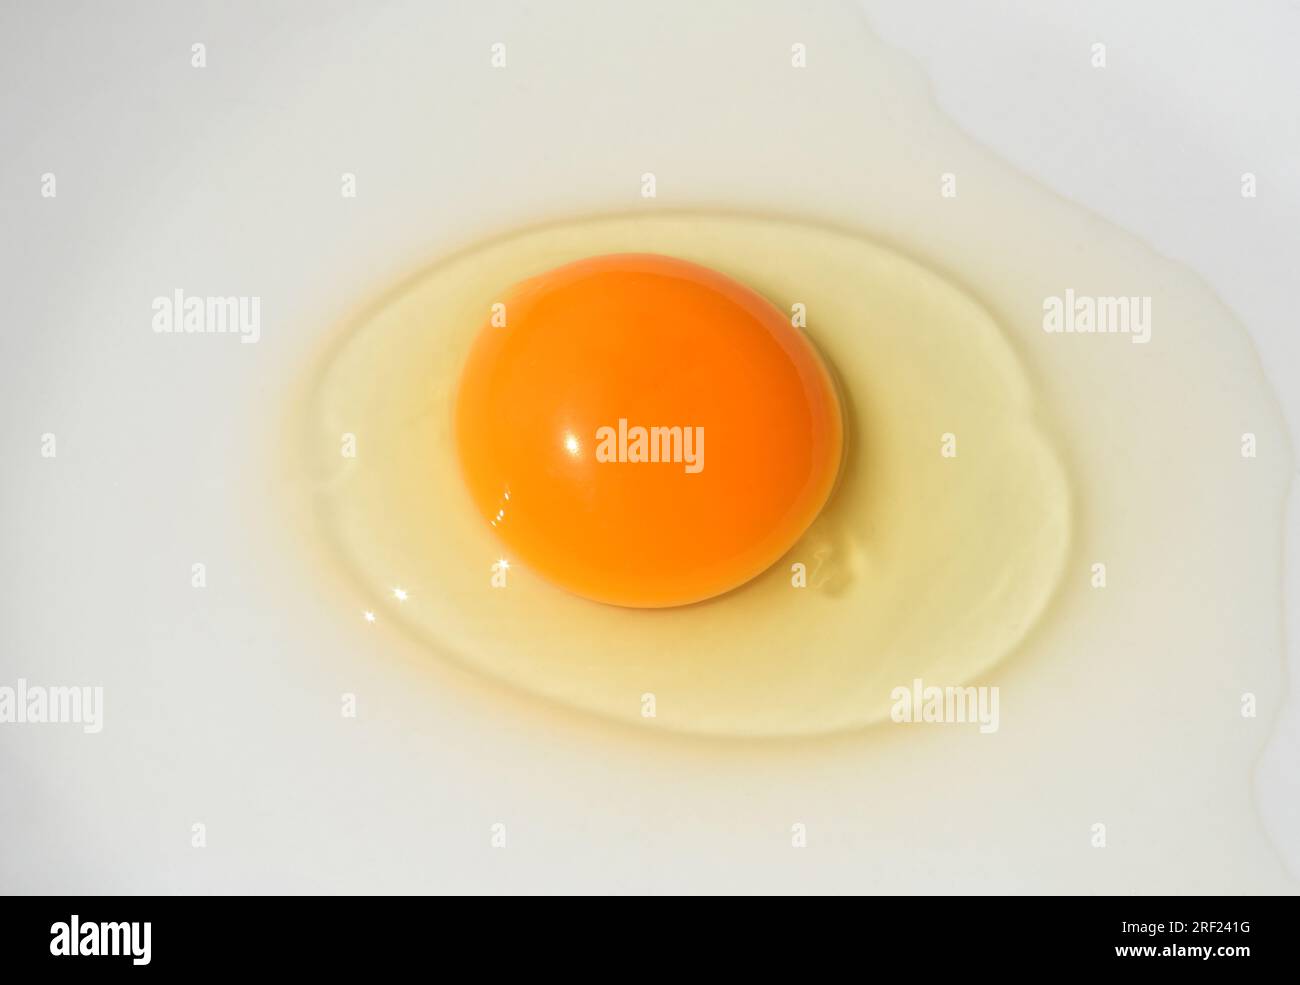 Ei, Huehnerei bzw. Eier sind ein wichtiges tierisches Lebensmittel. Eggs, chicken eggs or eggs are an important animal food. Stock Photo